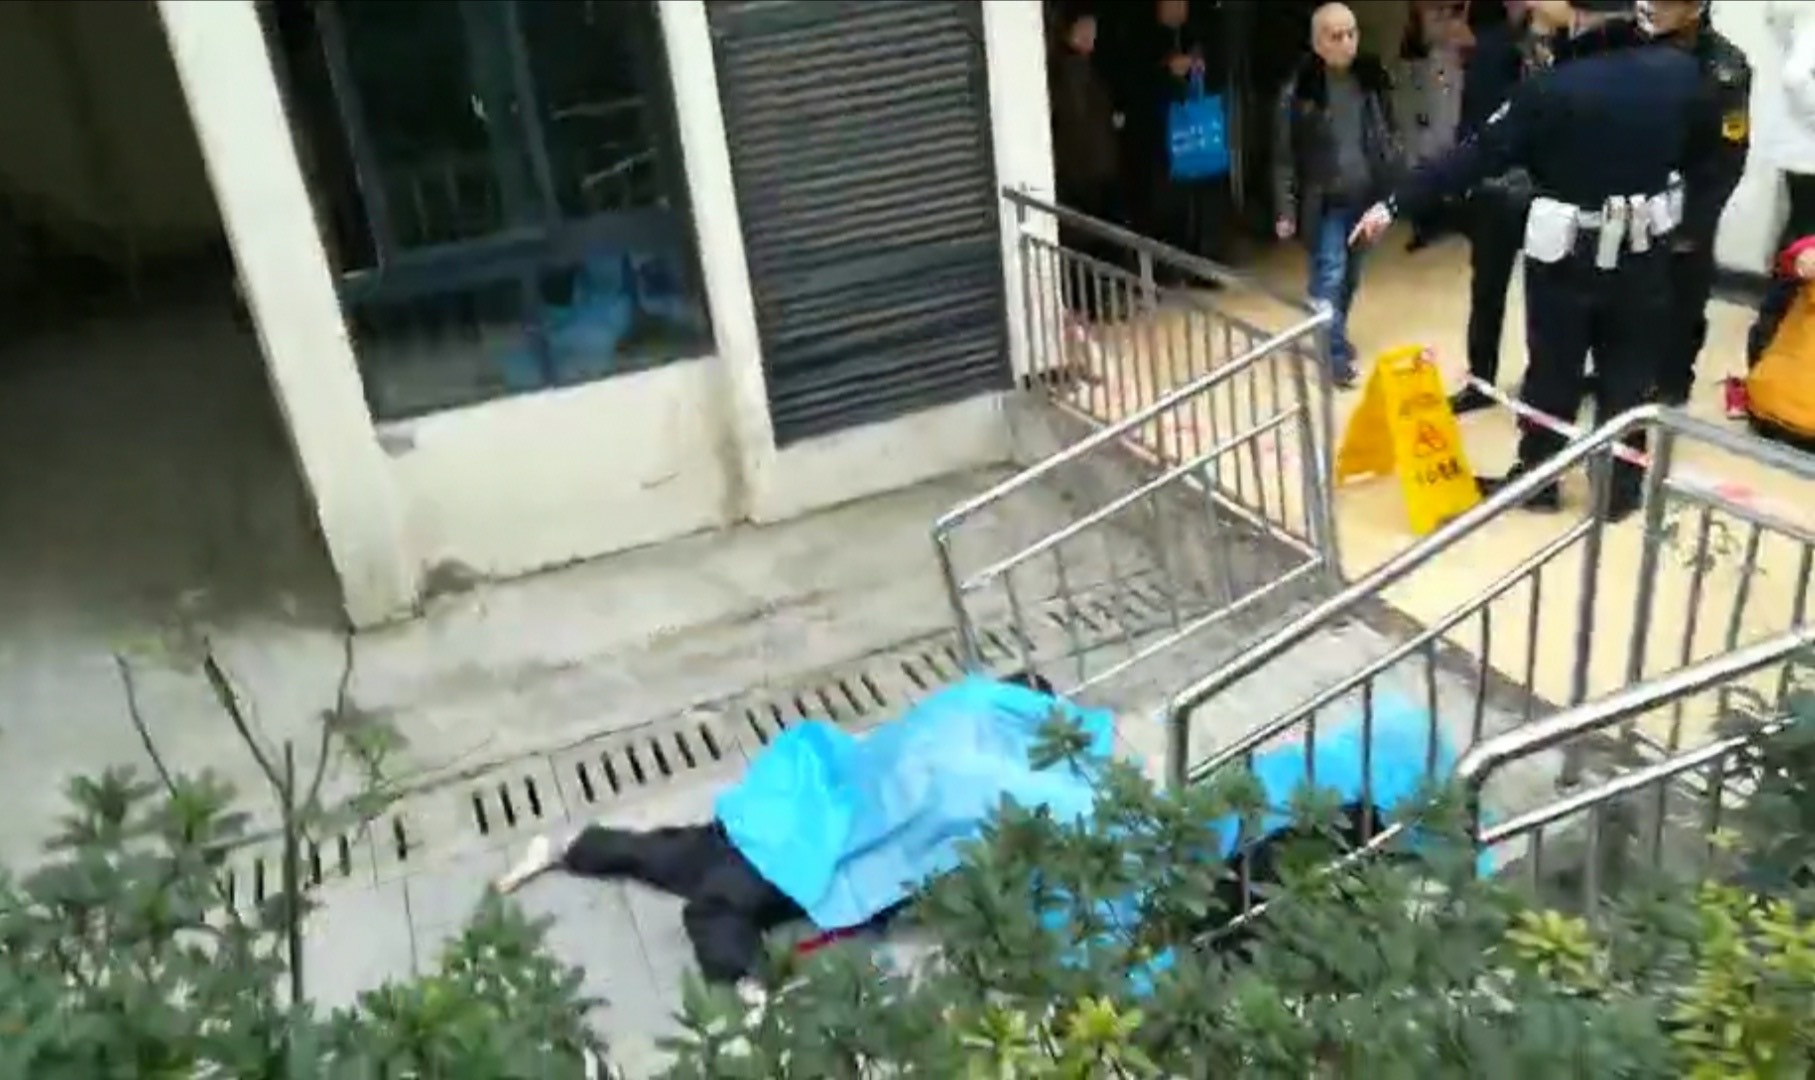 重庆坠楼砸死两人照片图片